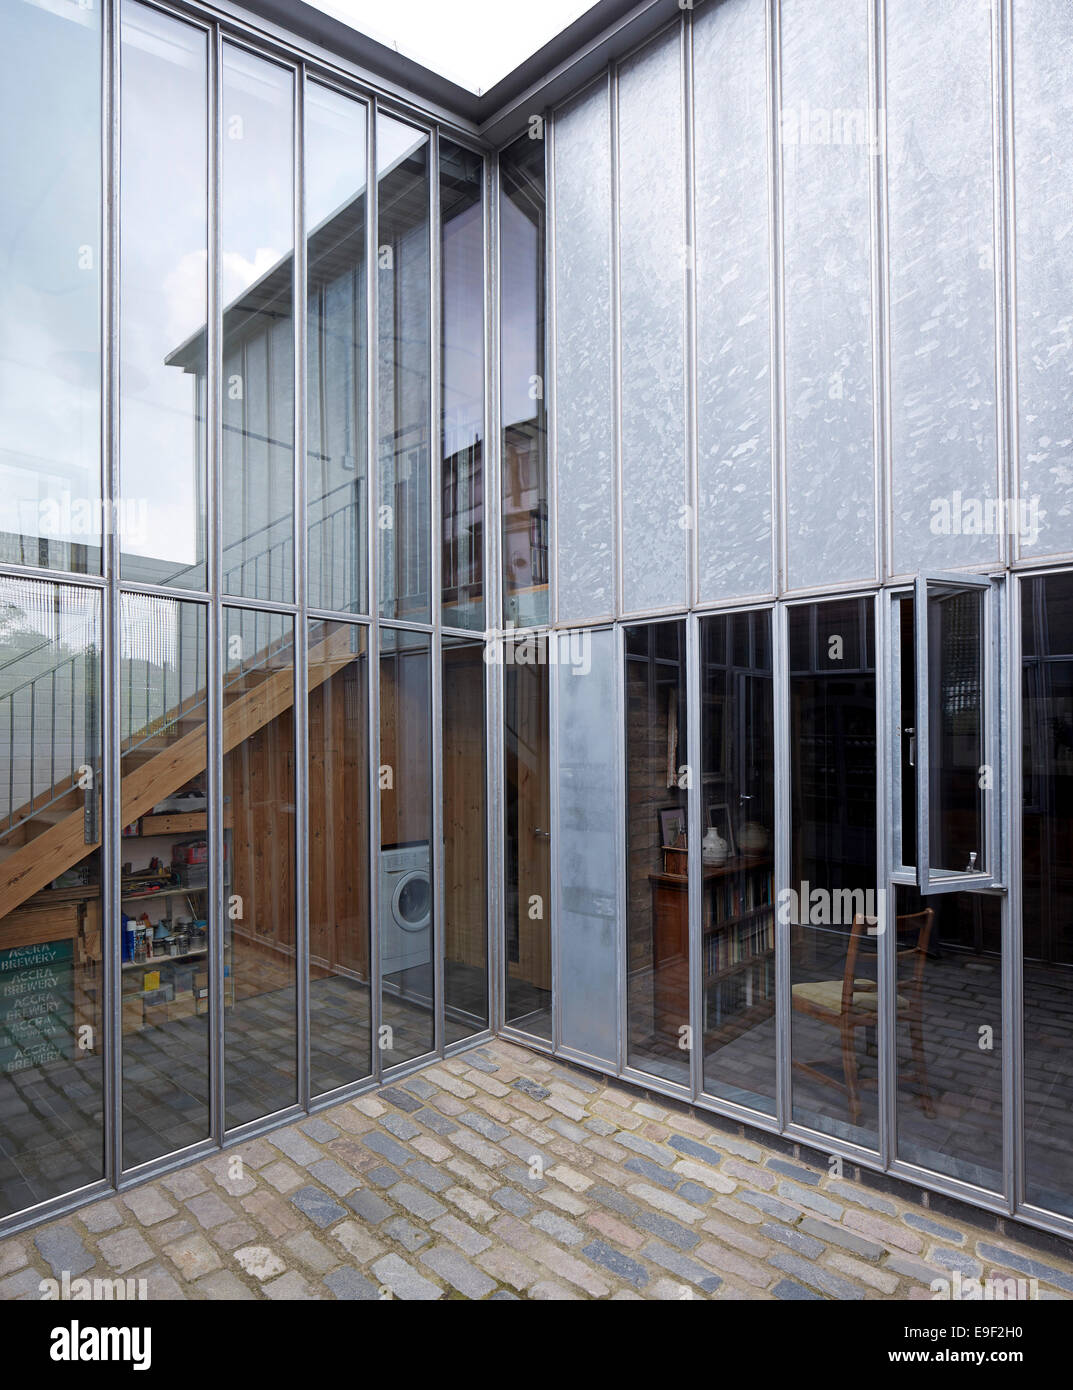 Hale Street House, un revoir, Londres, Royaume-Uni. Architecte : DSDHA, 2014. Voir 8 ans après l'achèvement, vue d'ensemble de cou Banque D'Images